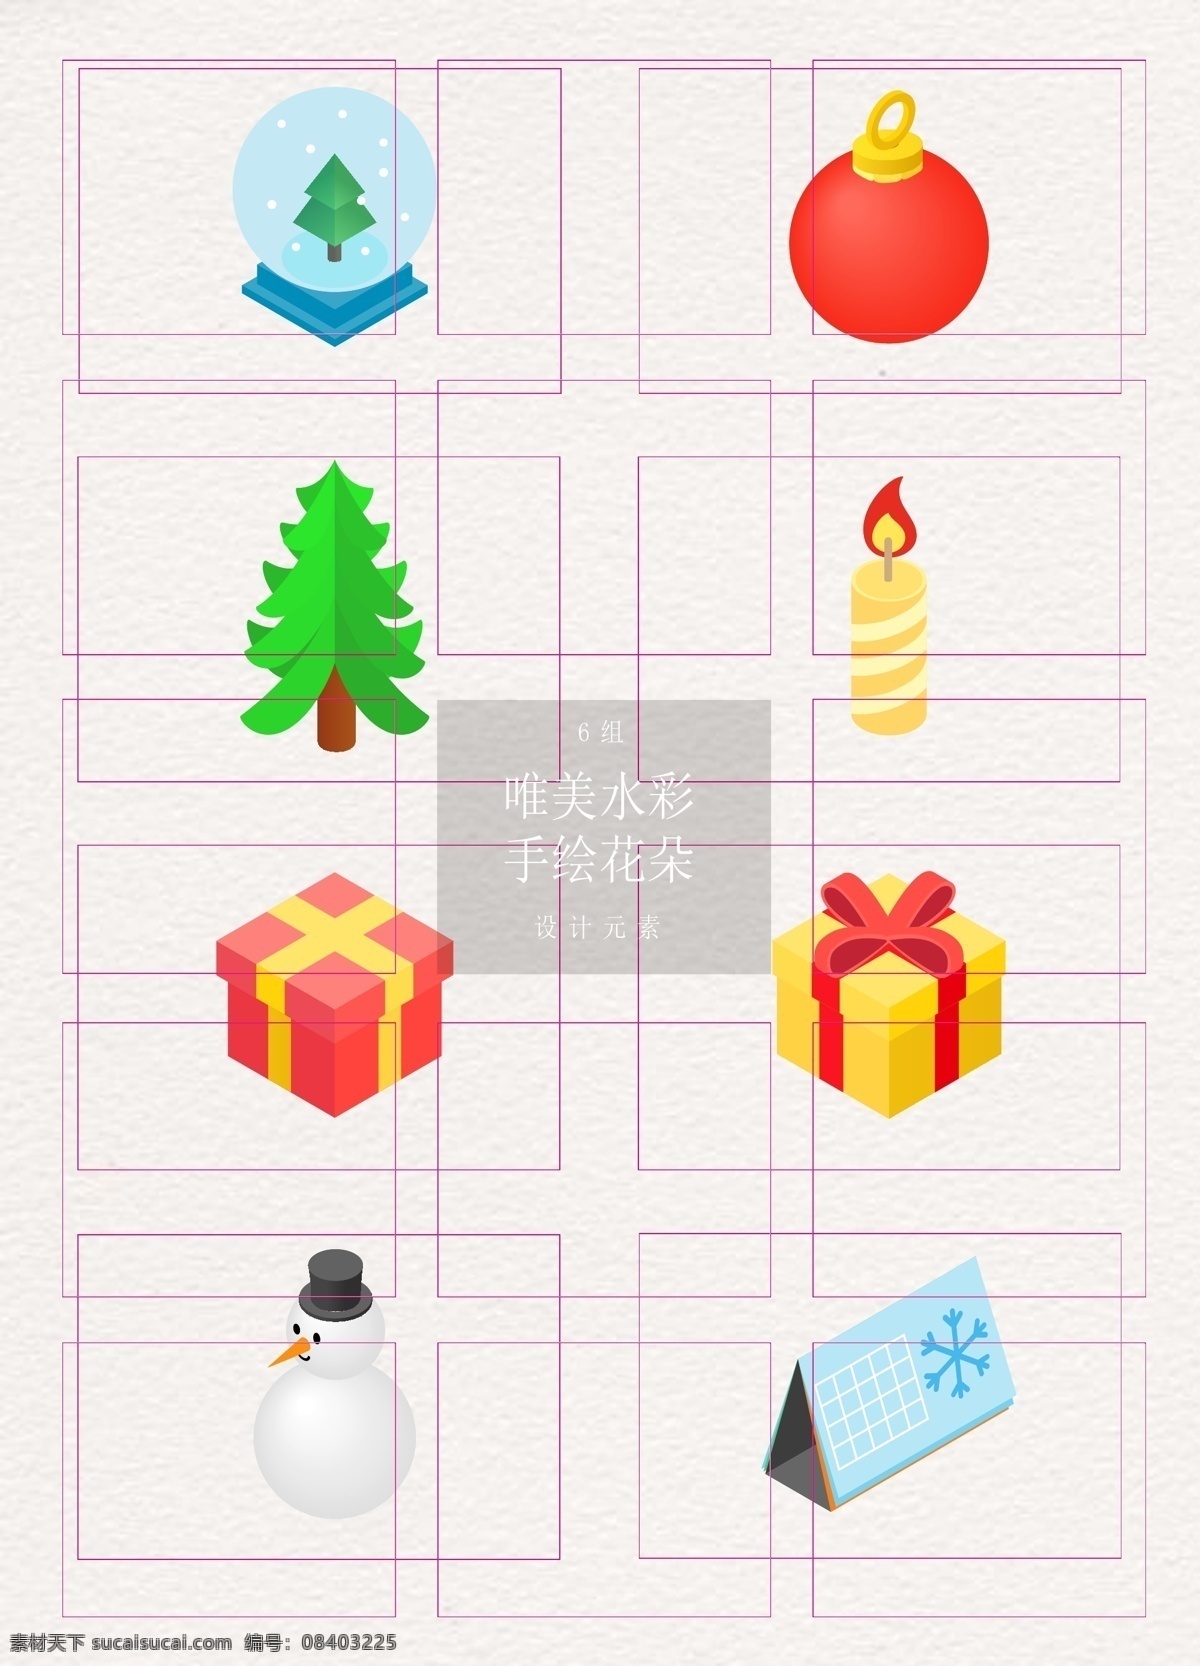 卡通 西方 圣诞节 元素 矢量图 松树 蜡烛 礼物 圣诞节元素 ai元素 雪球 吊球 雪人